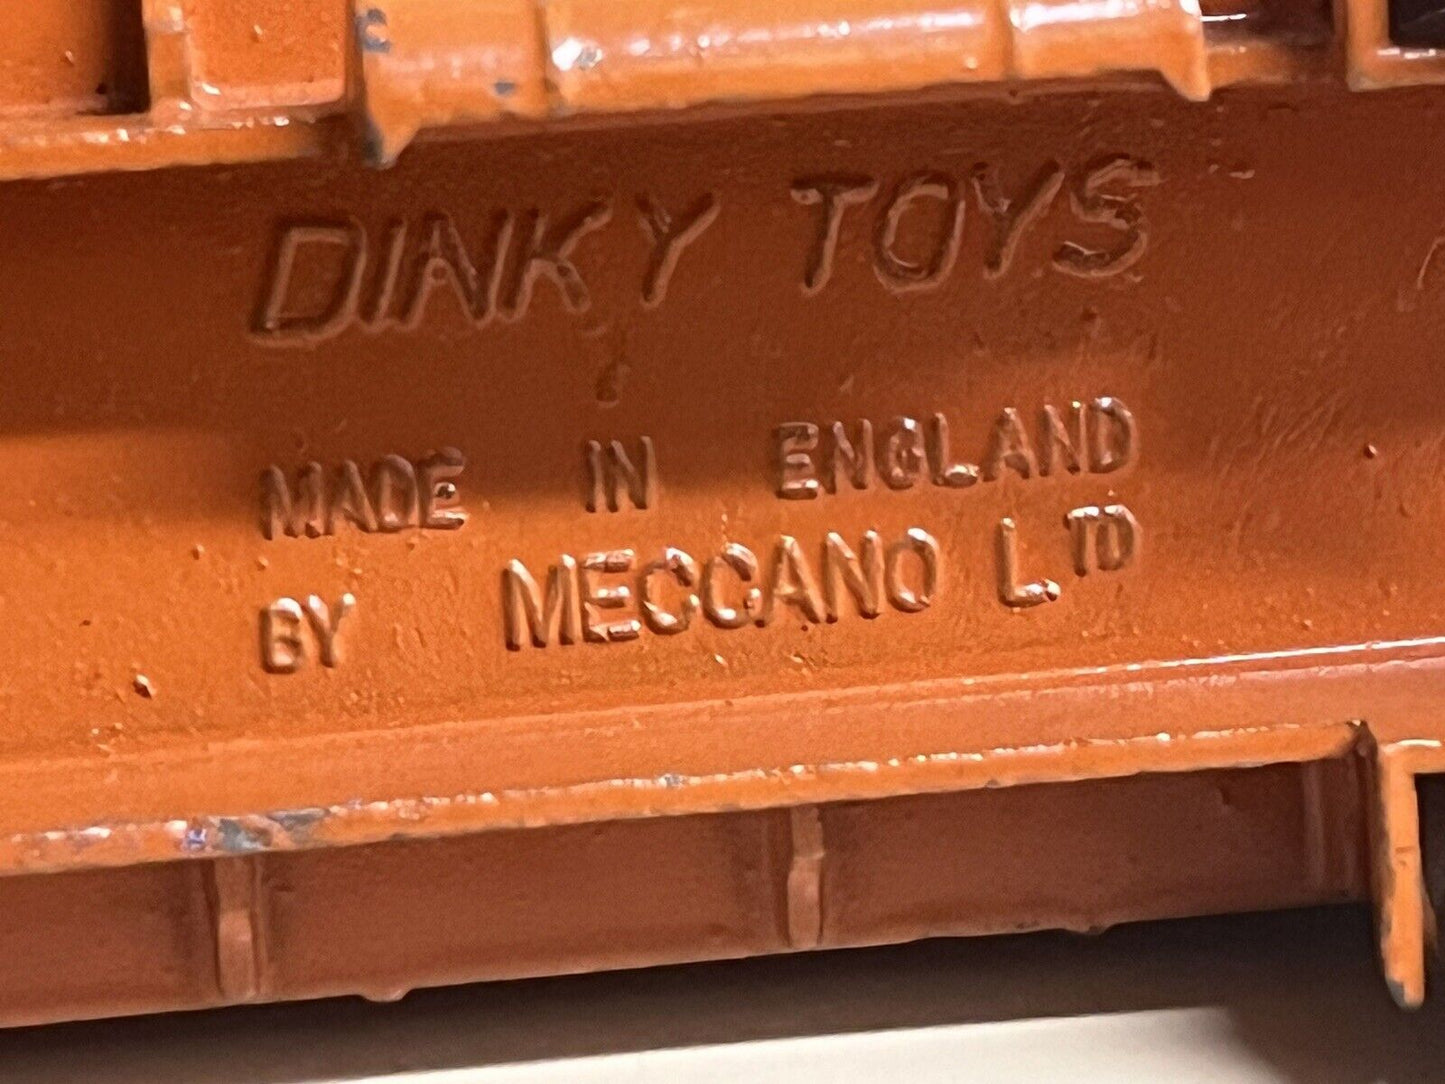 Dinky Toy Car